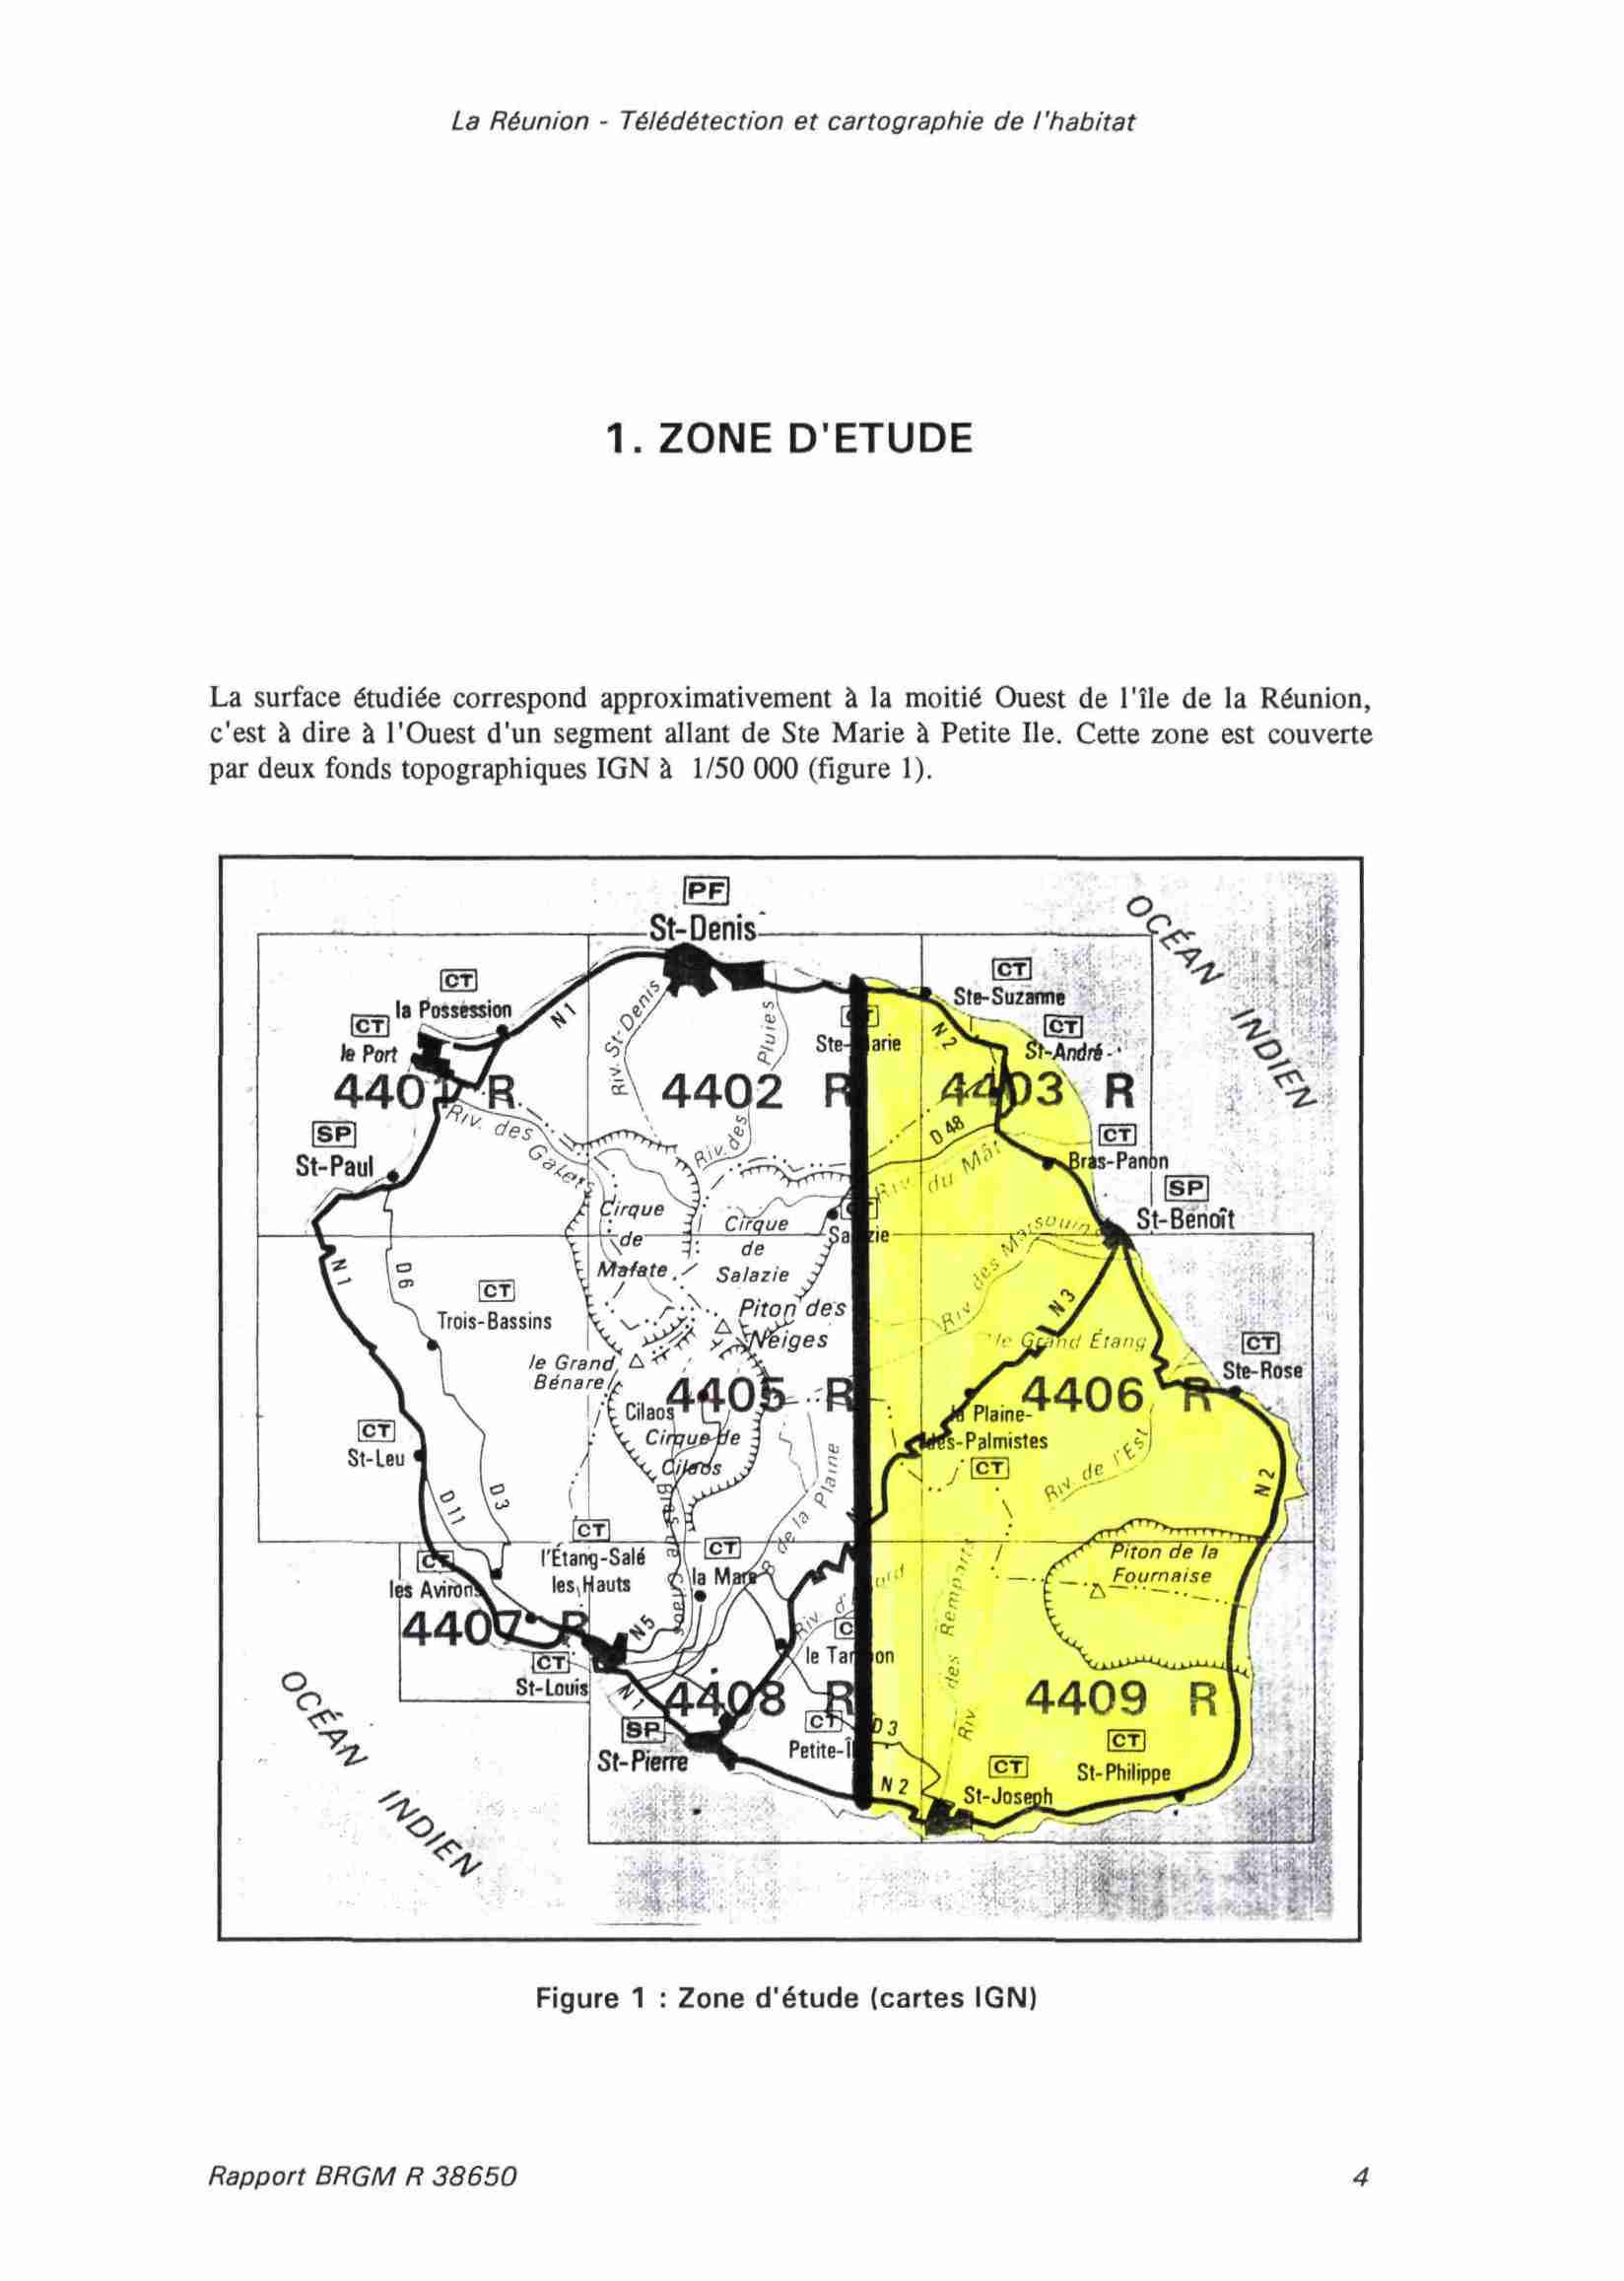 1. ZONE D'ETUDE La surface étudiée correspond approximativement à la moitié Ouest de l'île de la Réunion, c'est à dire à l'ouest d'un segment allant de Ste Marie à Petite Ile.